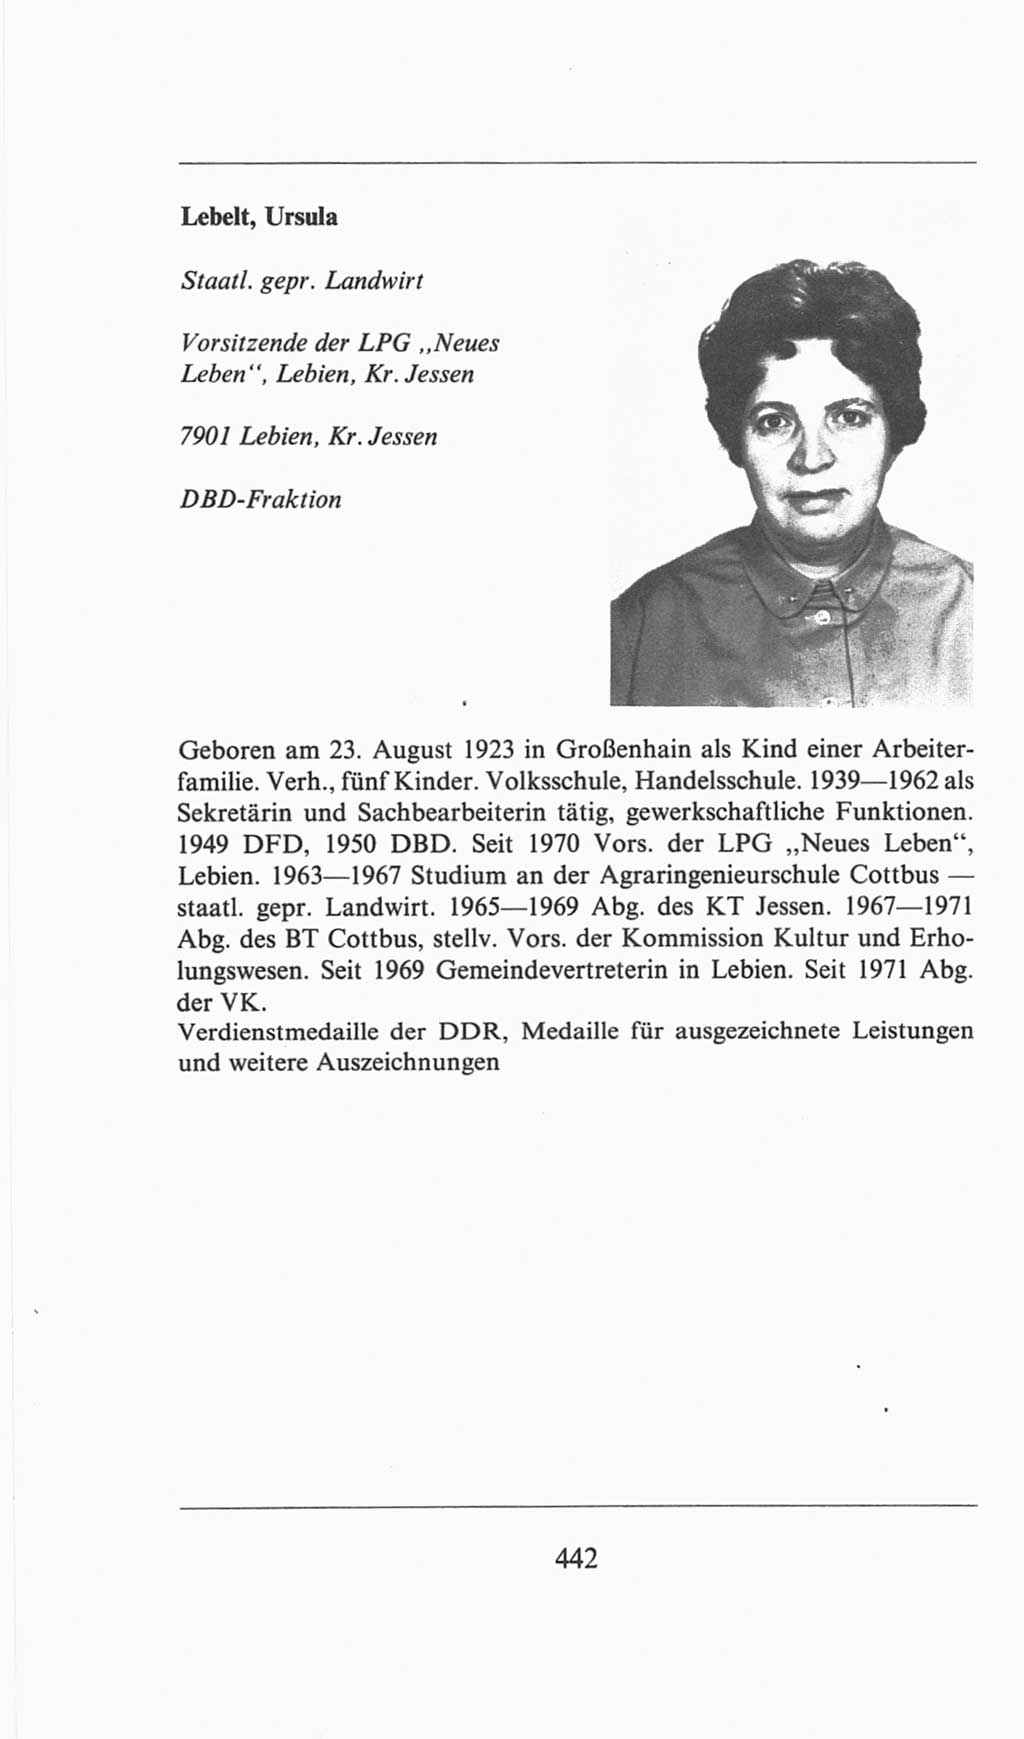 Volkskammer (VK) der Deutschen Demokratischen Republik (DDR), 6. Wahlperiode 1971-1976, Seite 442 (VK. DDR 6. WP. 1971-1976, S. 442)